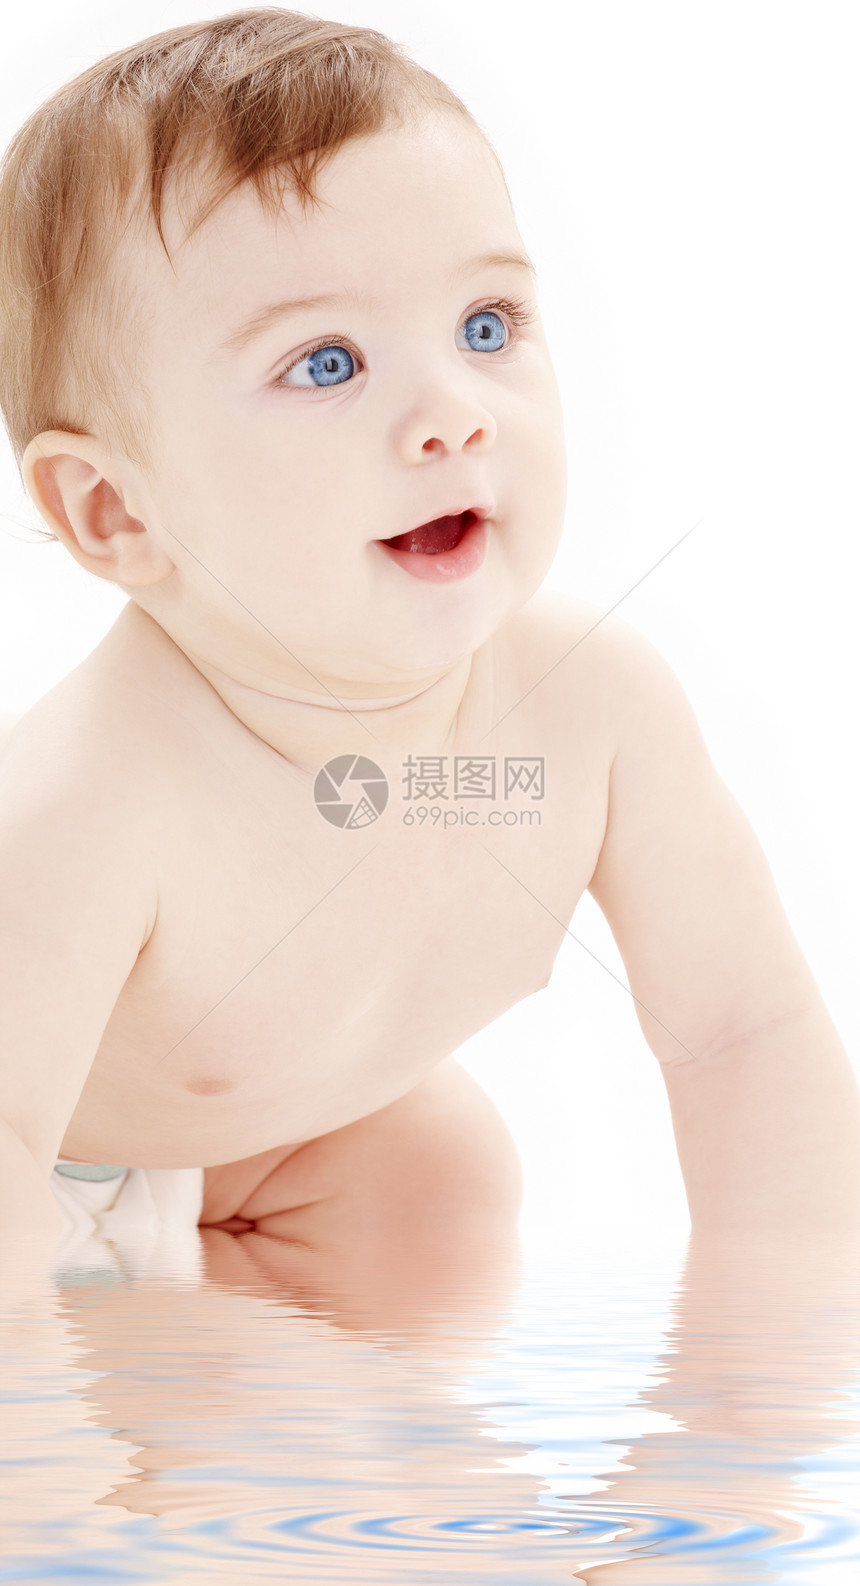 爬行婴儿男孩向上看的肖像蓝色微笑快乐童年幸福保健男生男性生活育儿图片